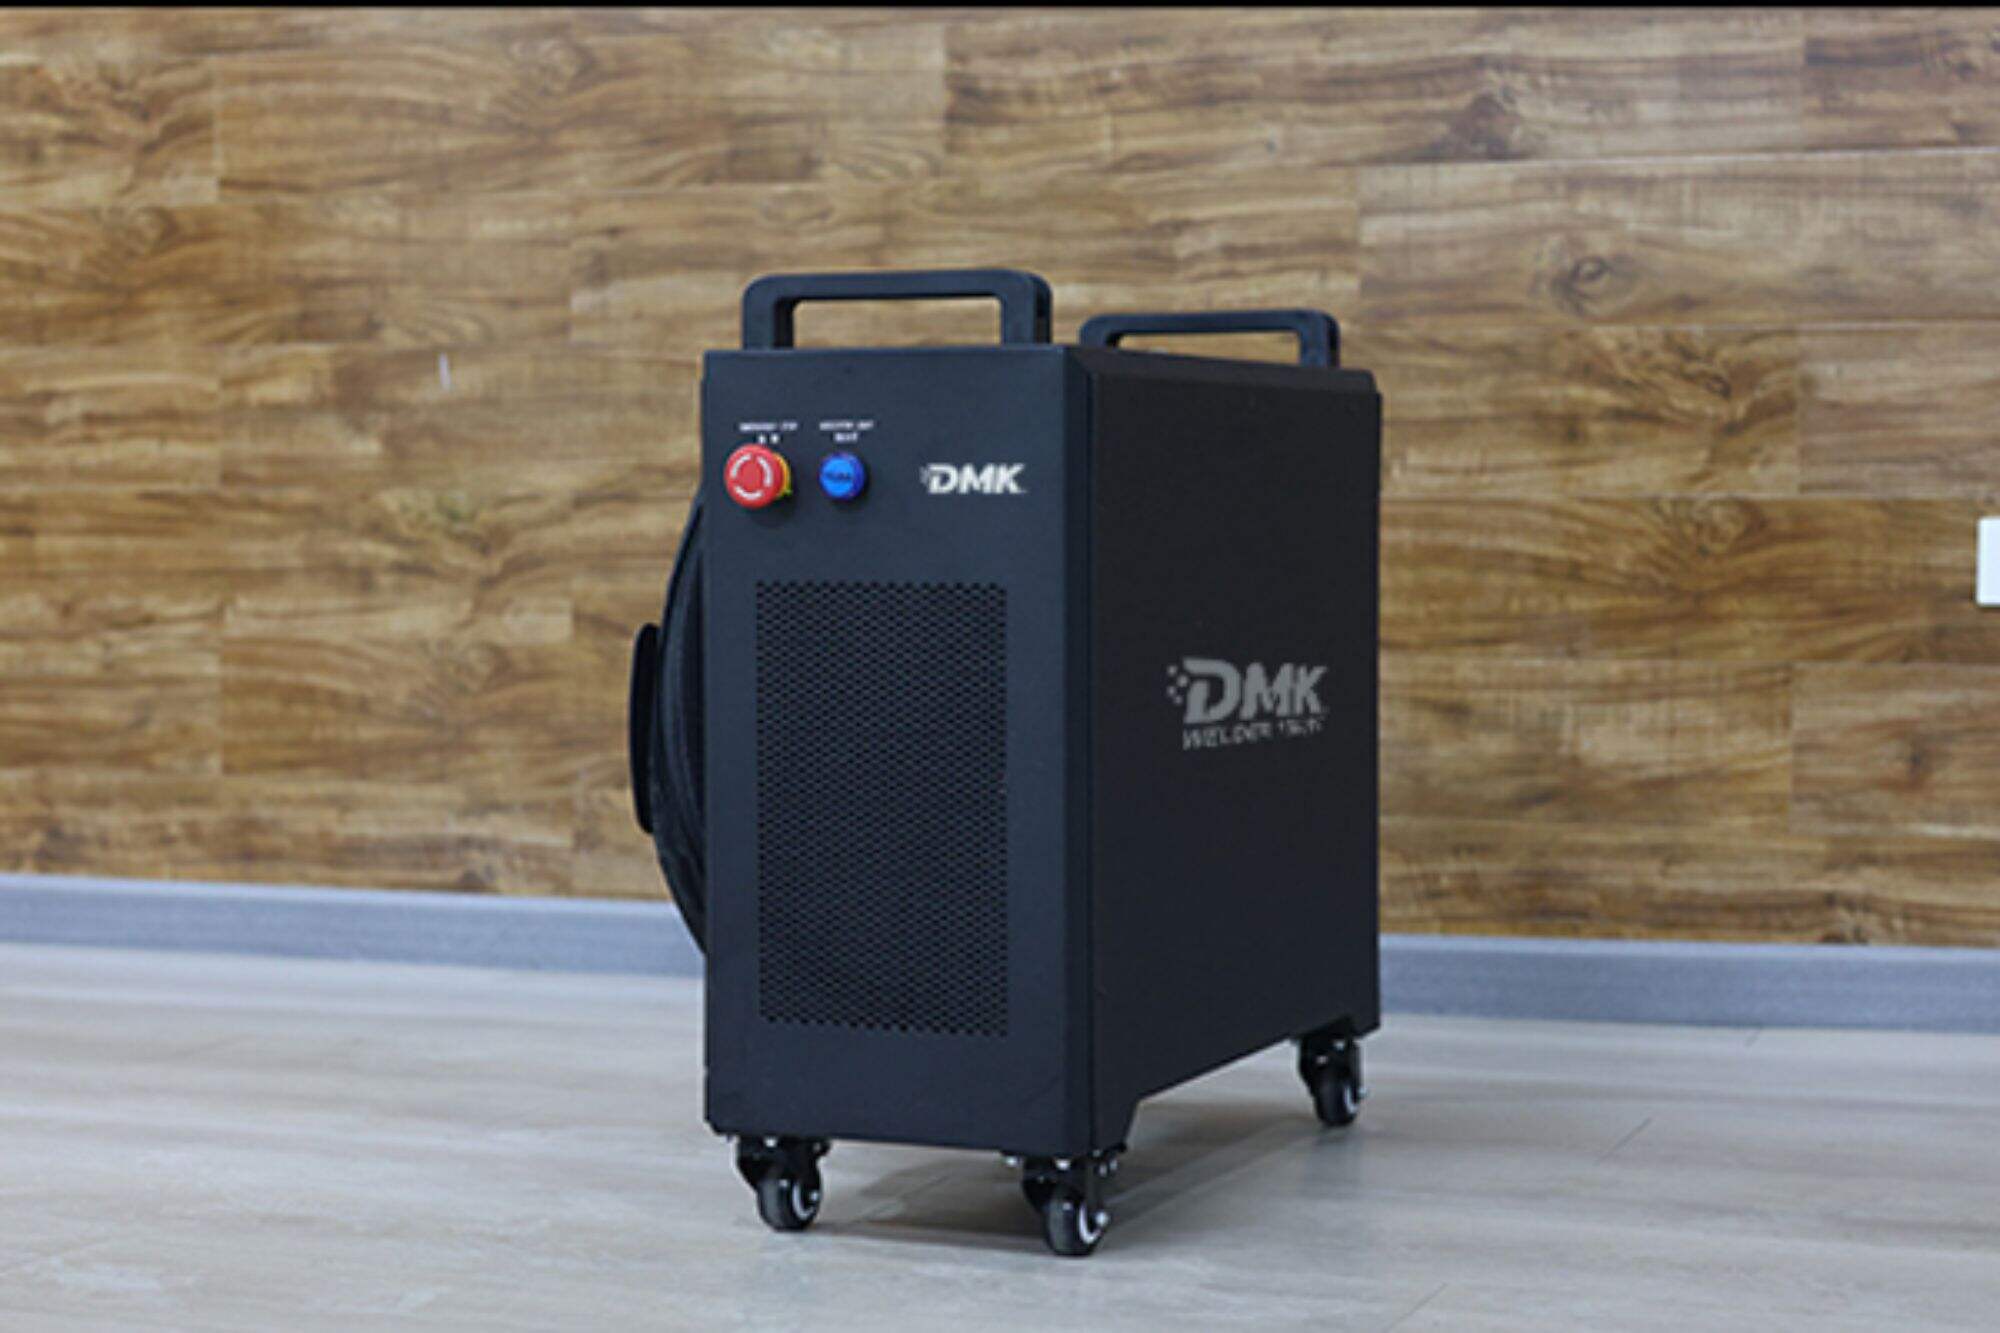 Встановлення міні-лазерного зварювального апарату з повітряним охолодженням DMK Інструкція з встановлення міні-лазерного зварювального апарату з повітряним охолодженням DMK